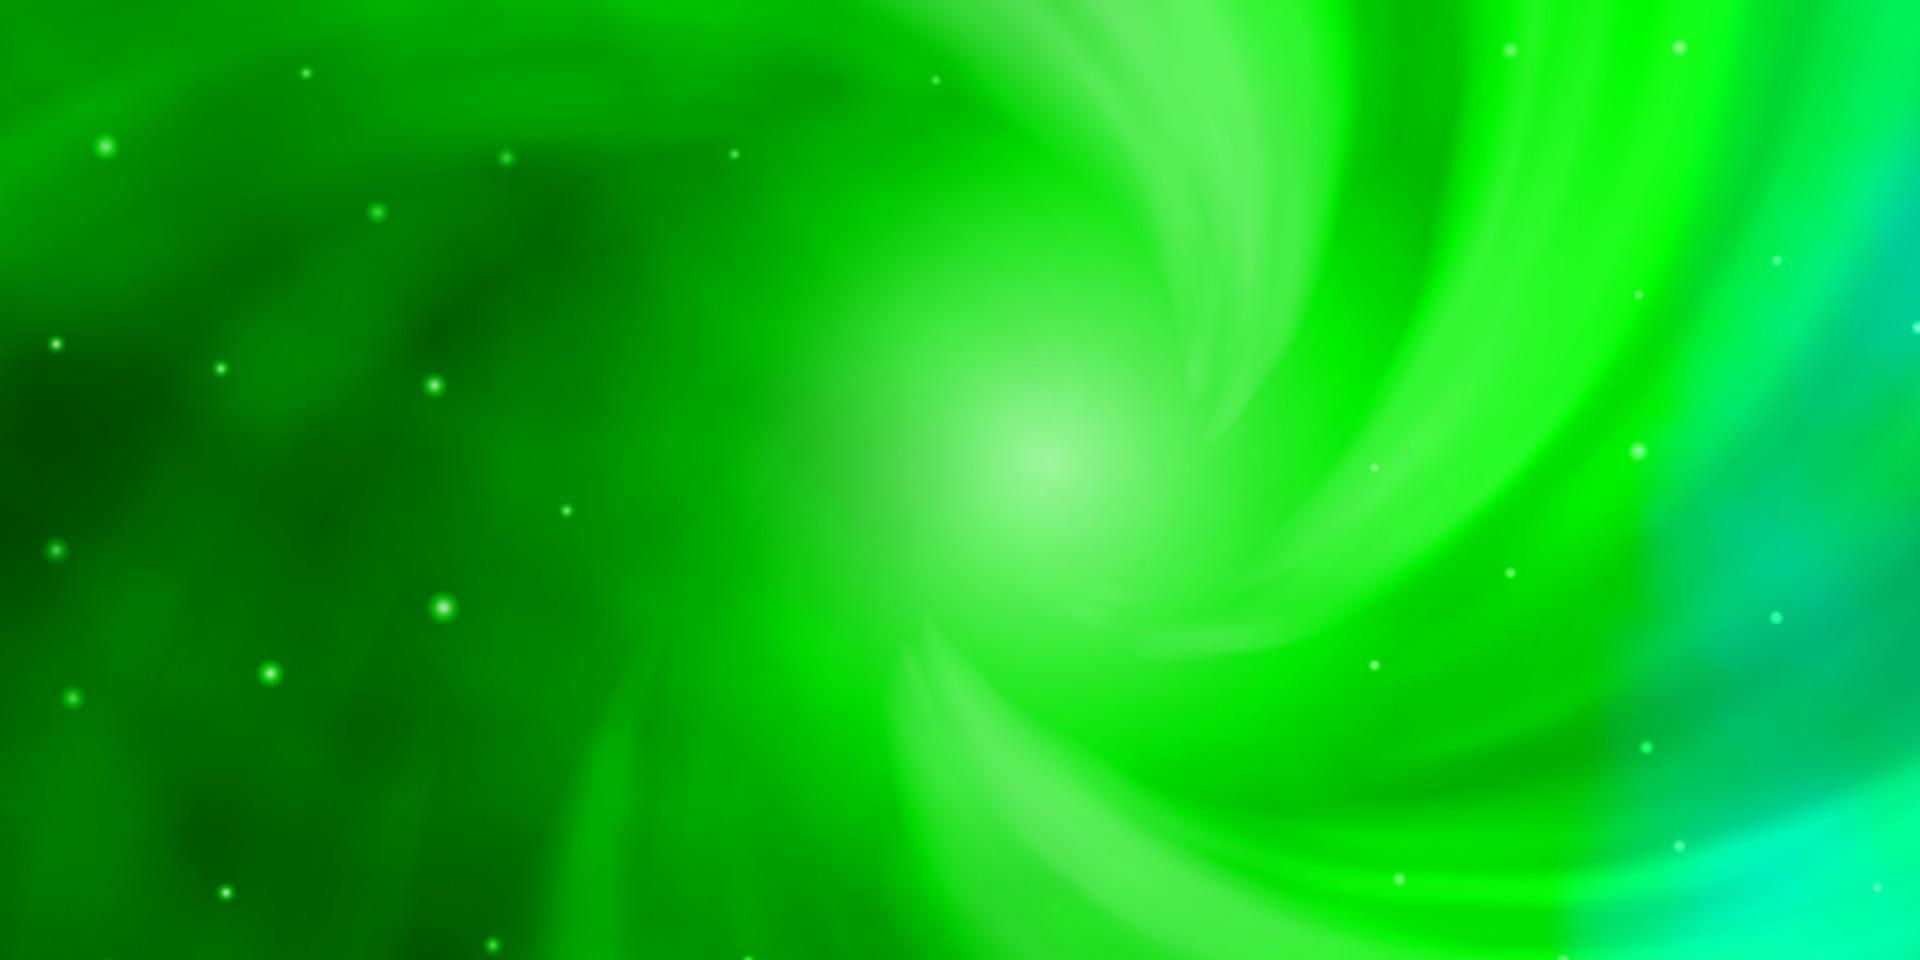 padrão de vetor verde claro com estrelas abstratas.